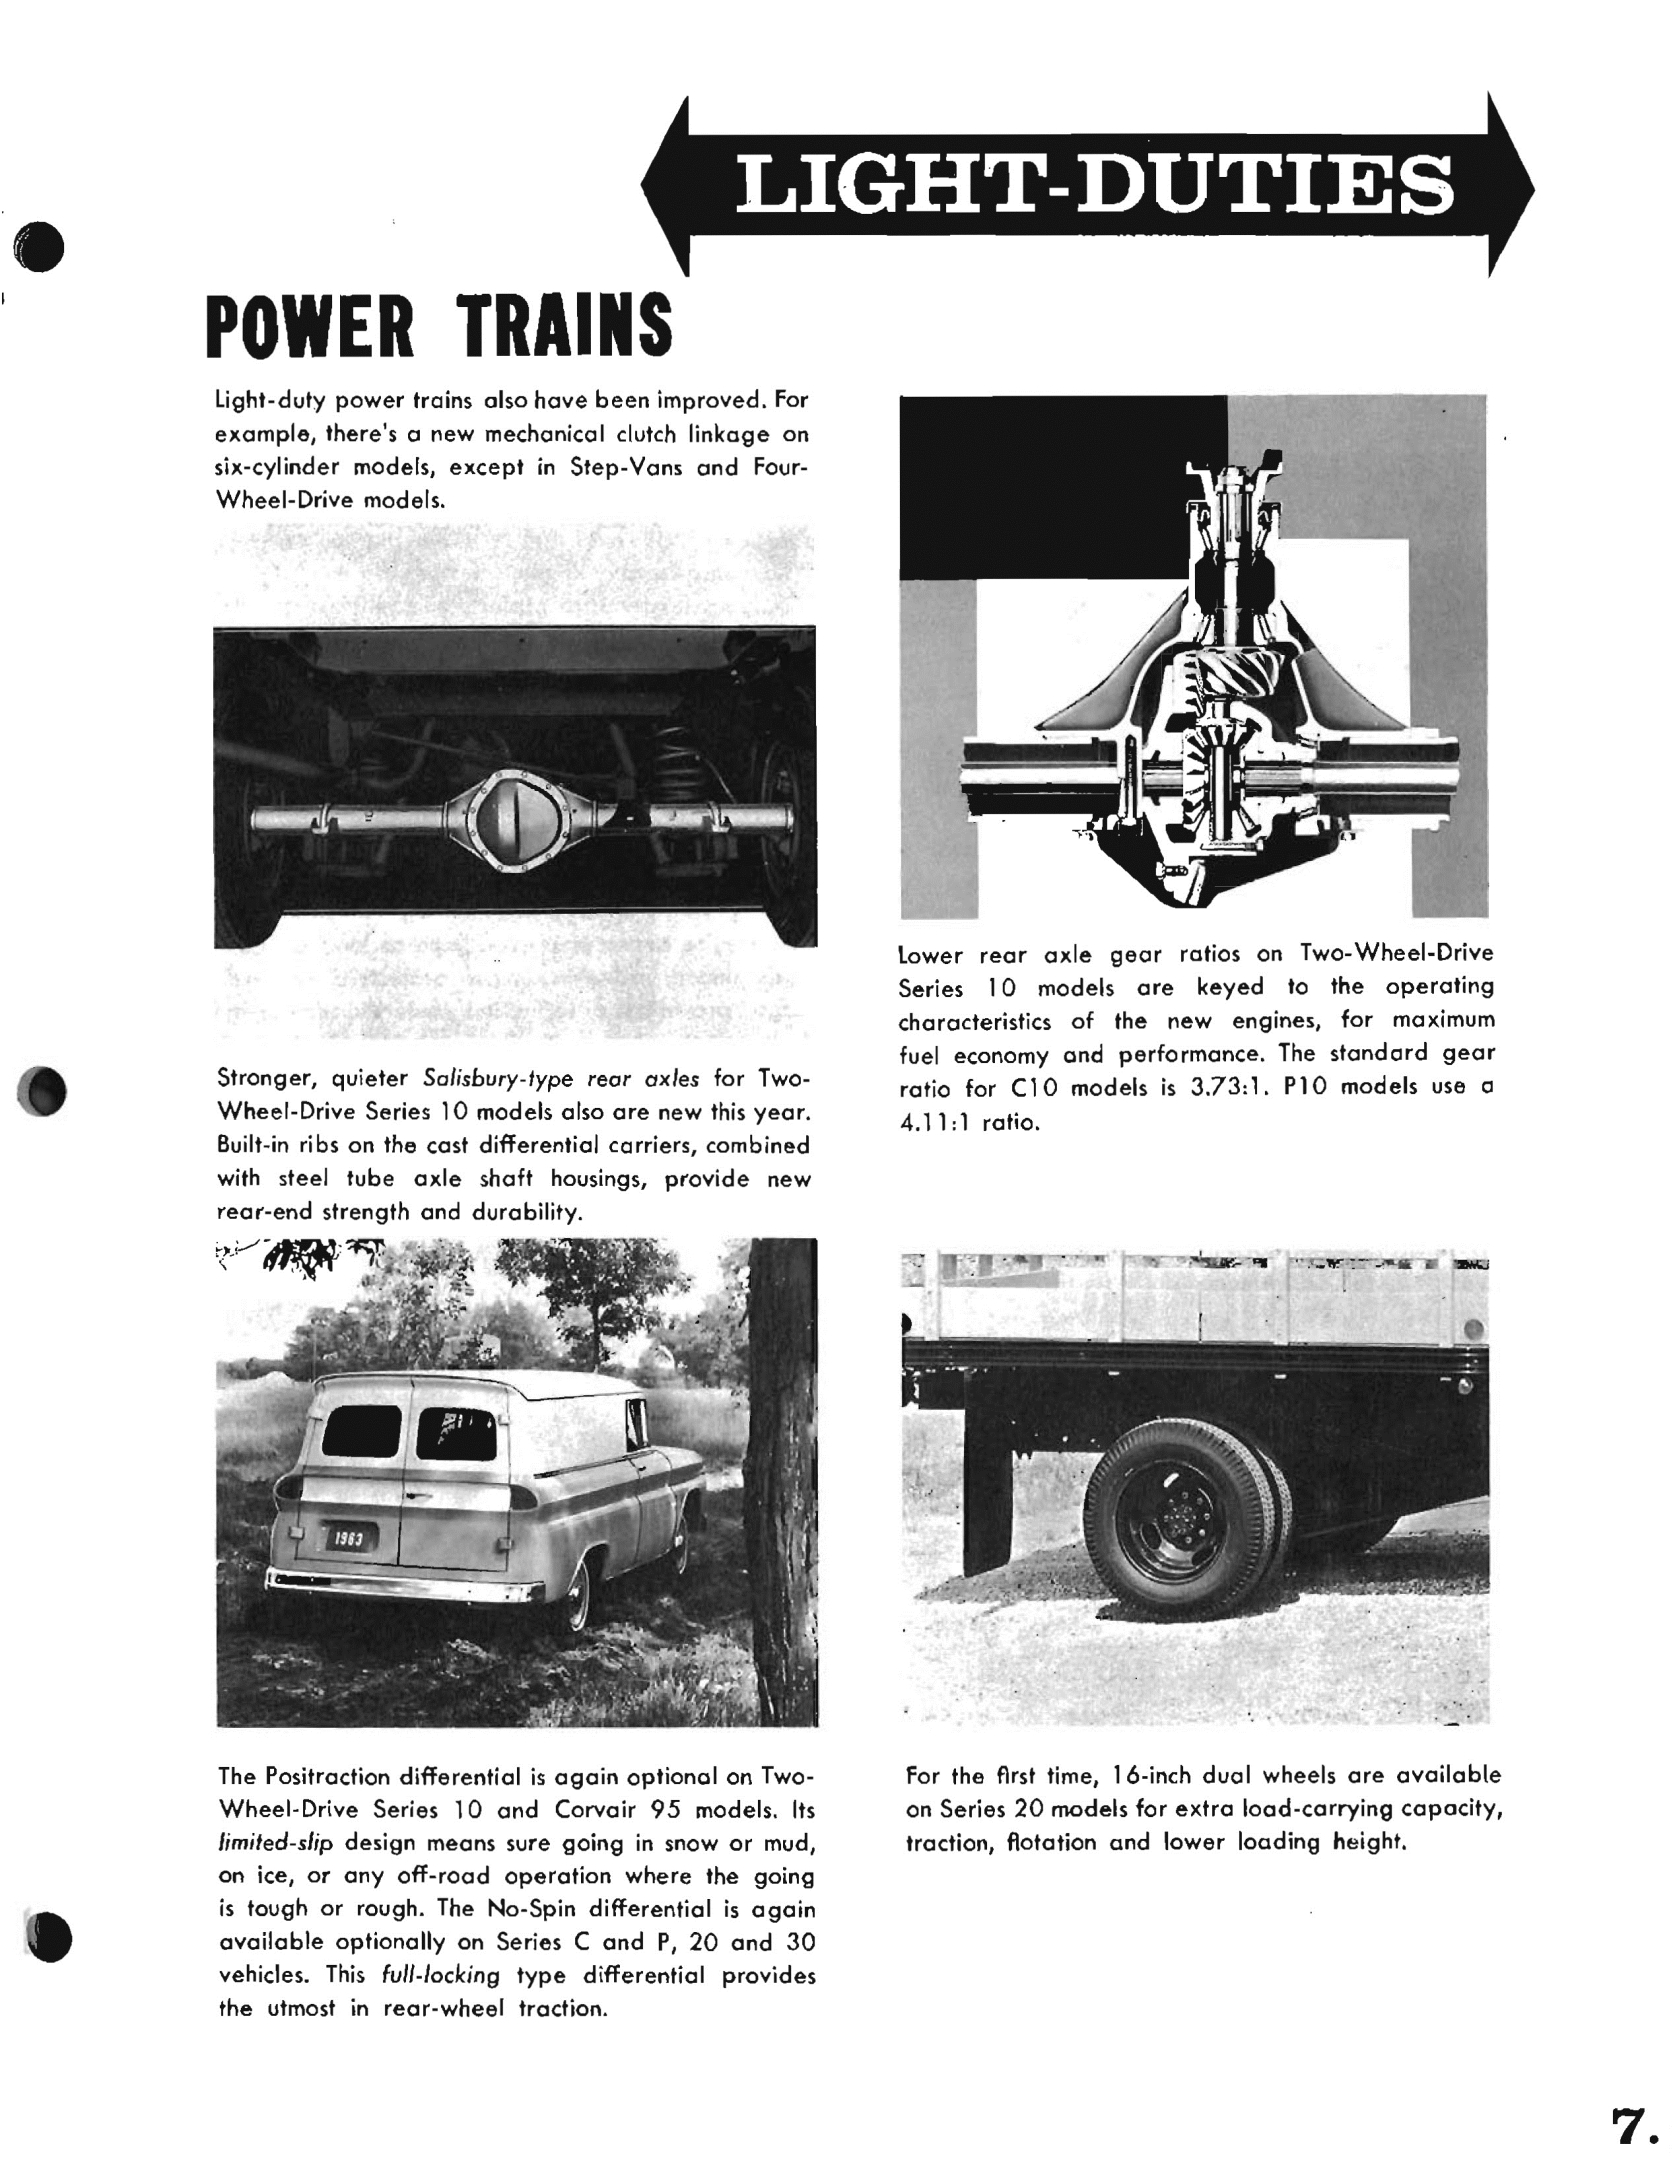 1963_Chevrolet_Trucks_Booklet-07